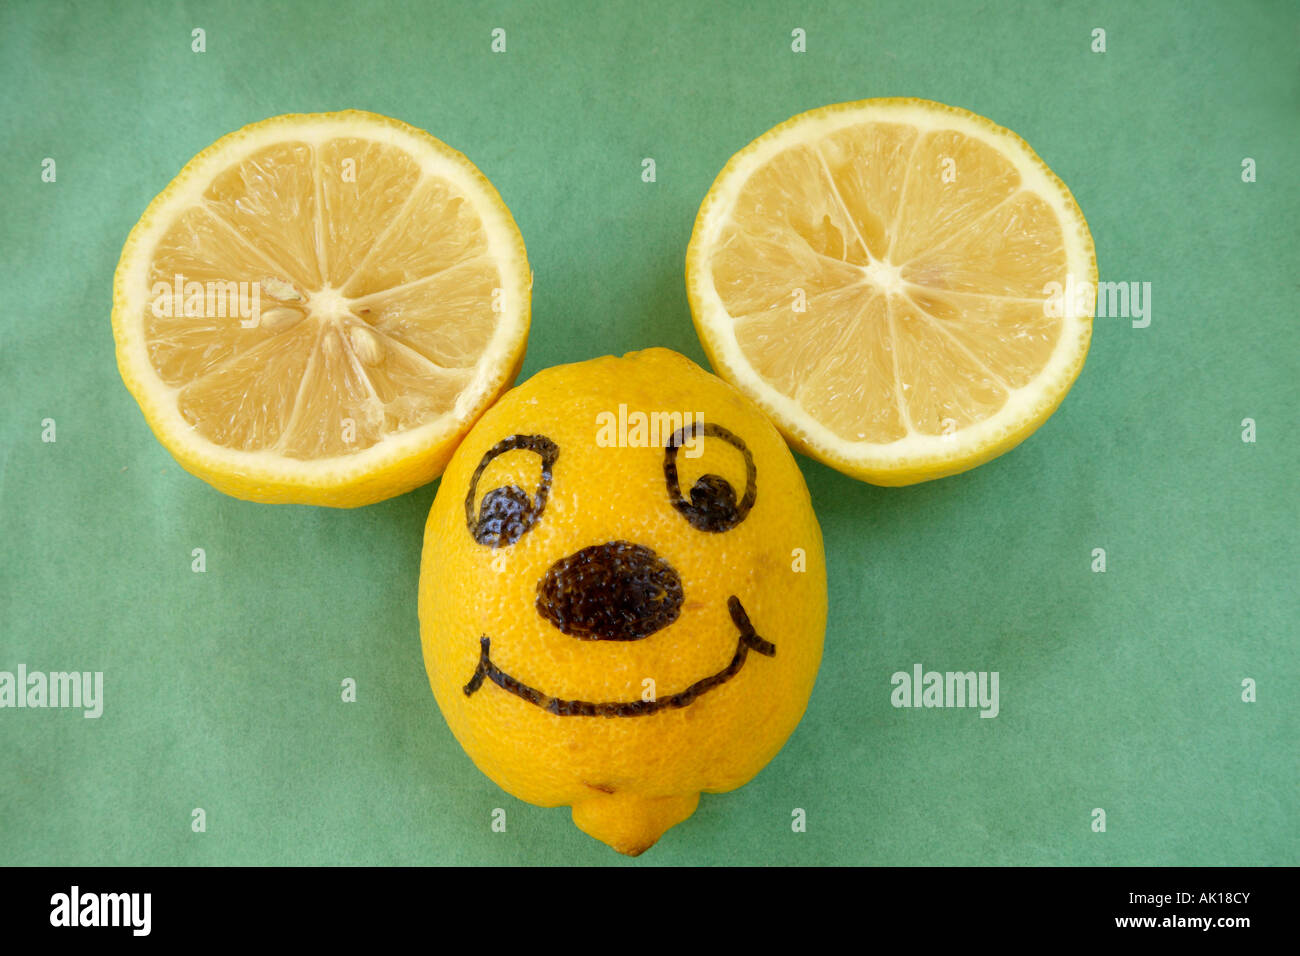 Souris Citron Visage. Ensemble avec citron smiling face souris tirés sur lui et couper deux moitiés de citron au-dessus que les oreilles. Banque D'Images